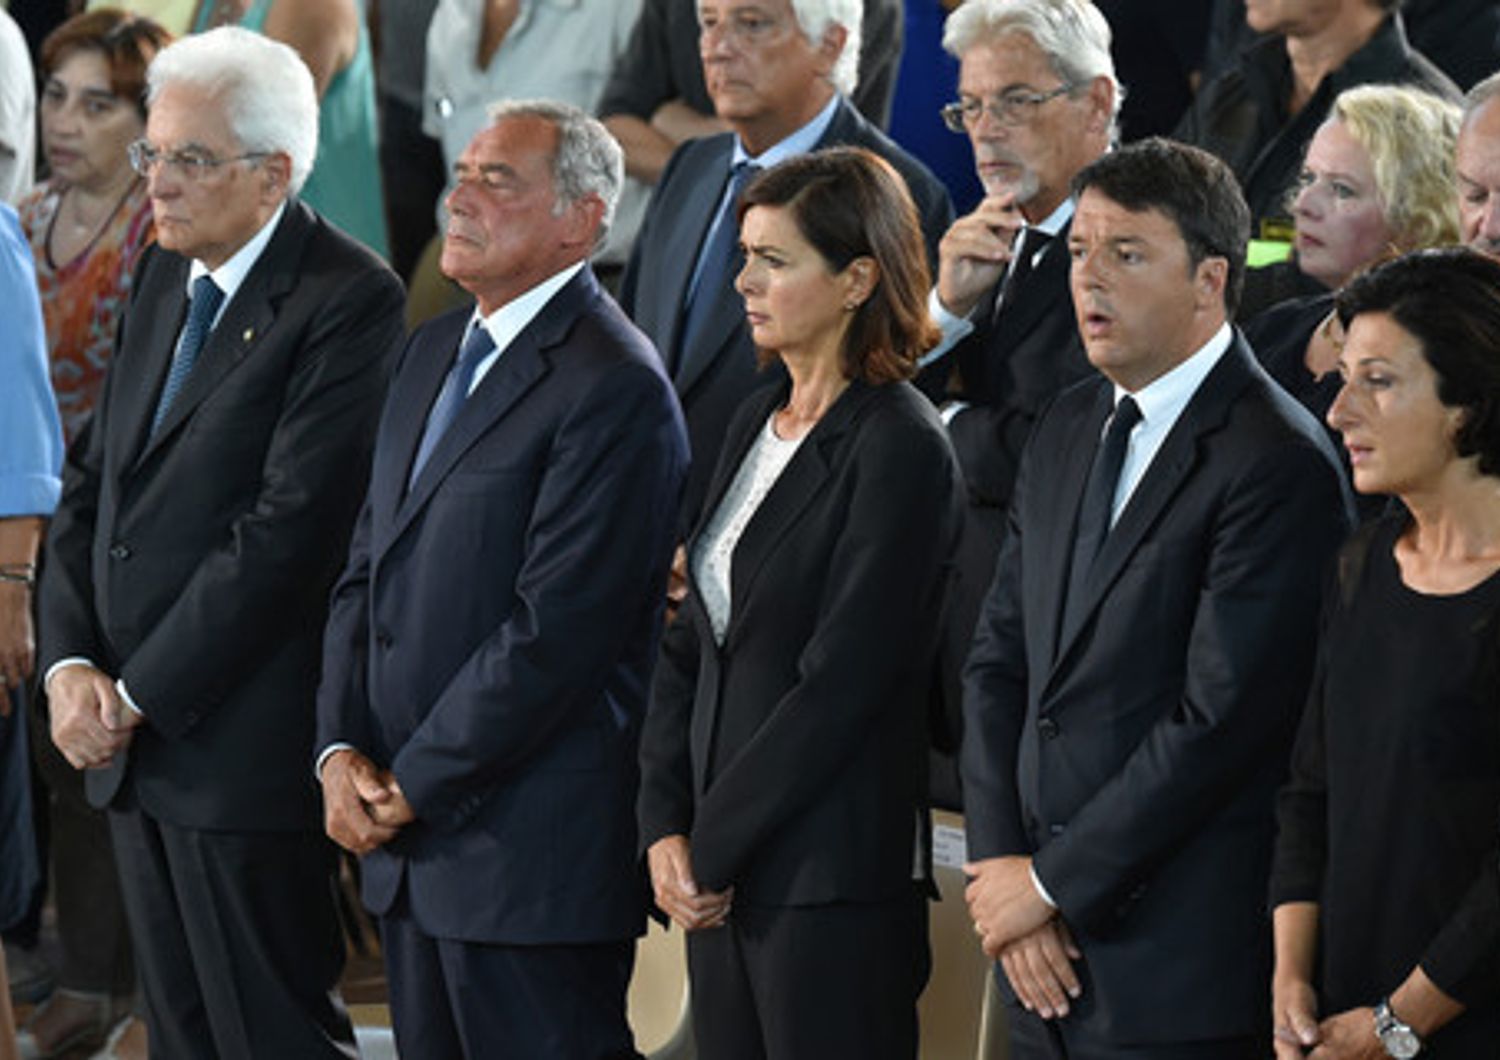 Il presidente del Senato Pietro Grasso, la presidente della Camera Laura Boldrini sono due neopensionati